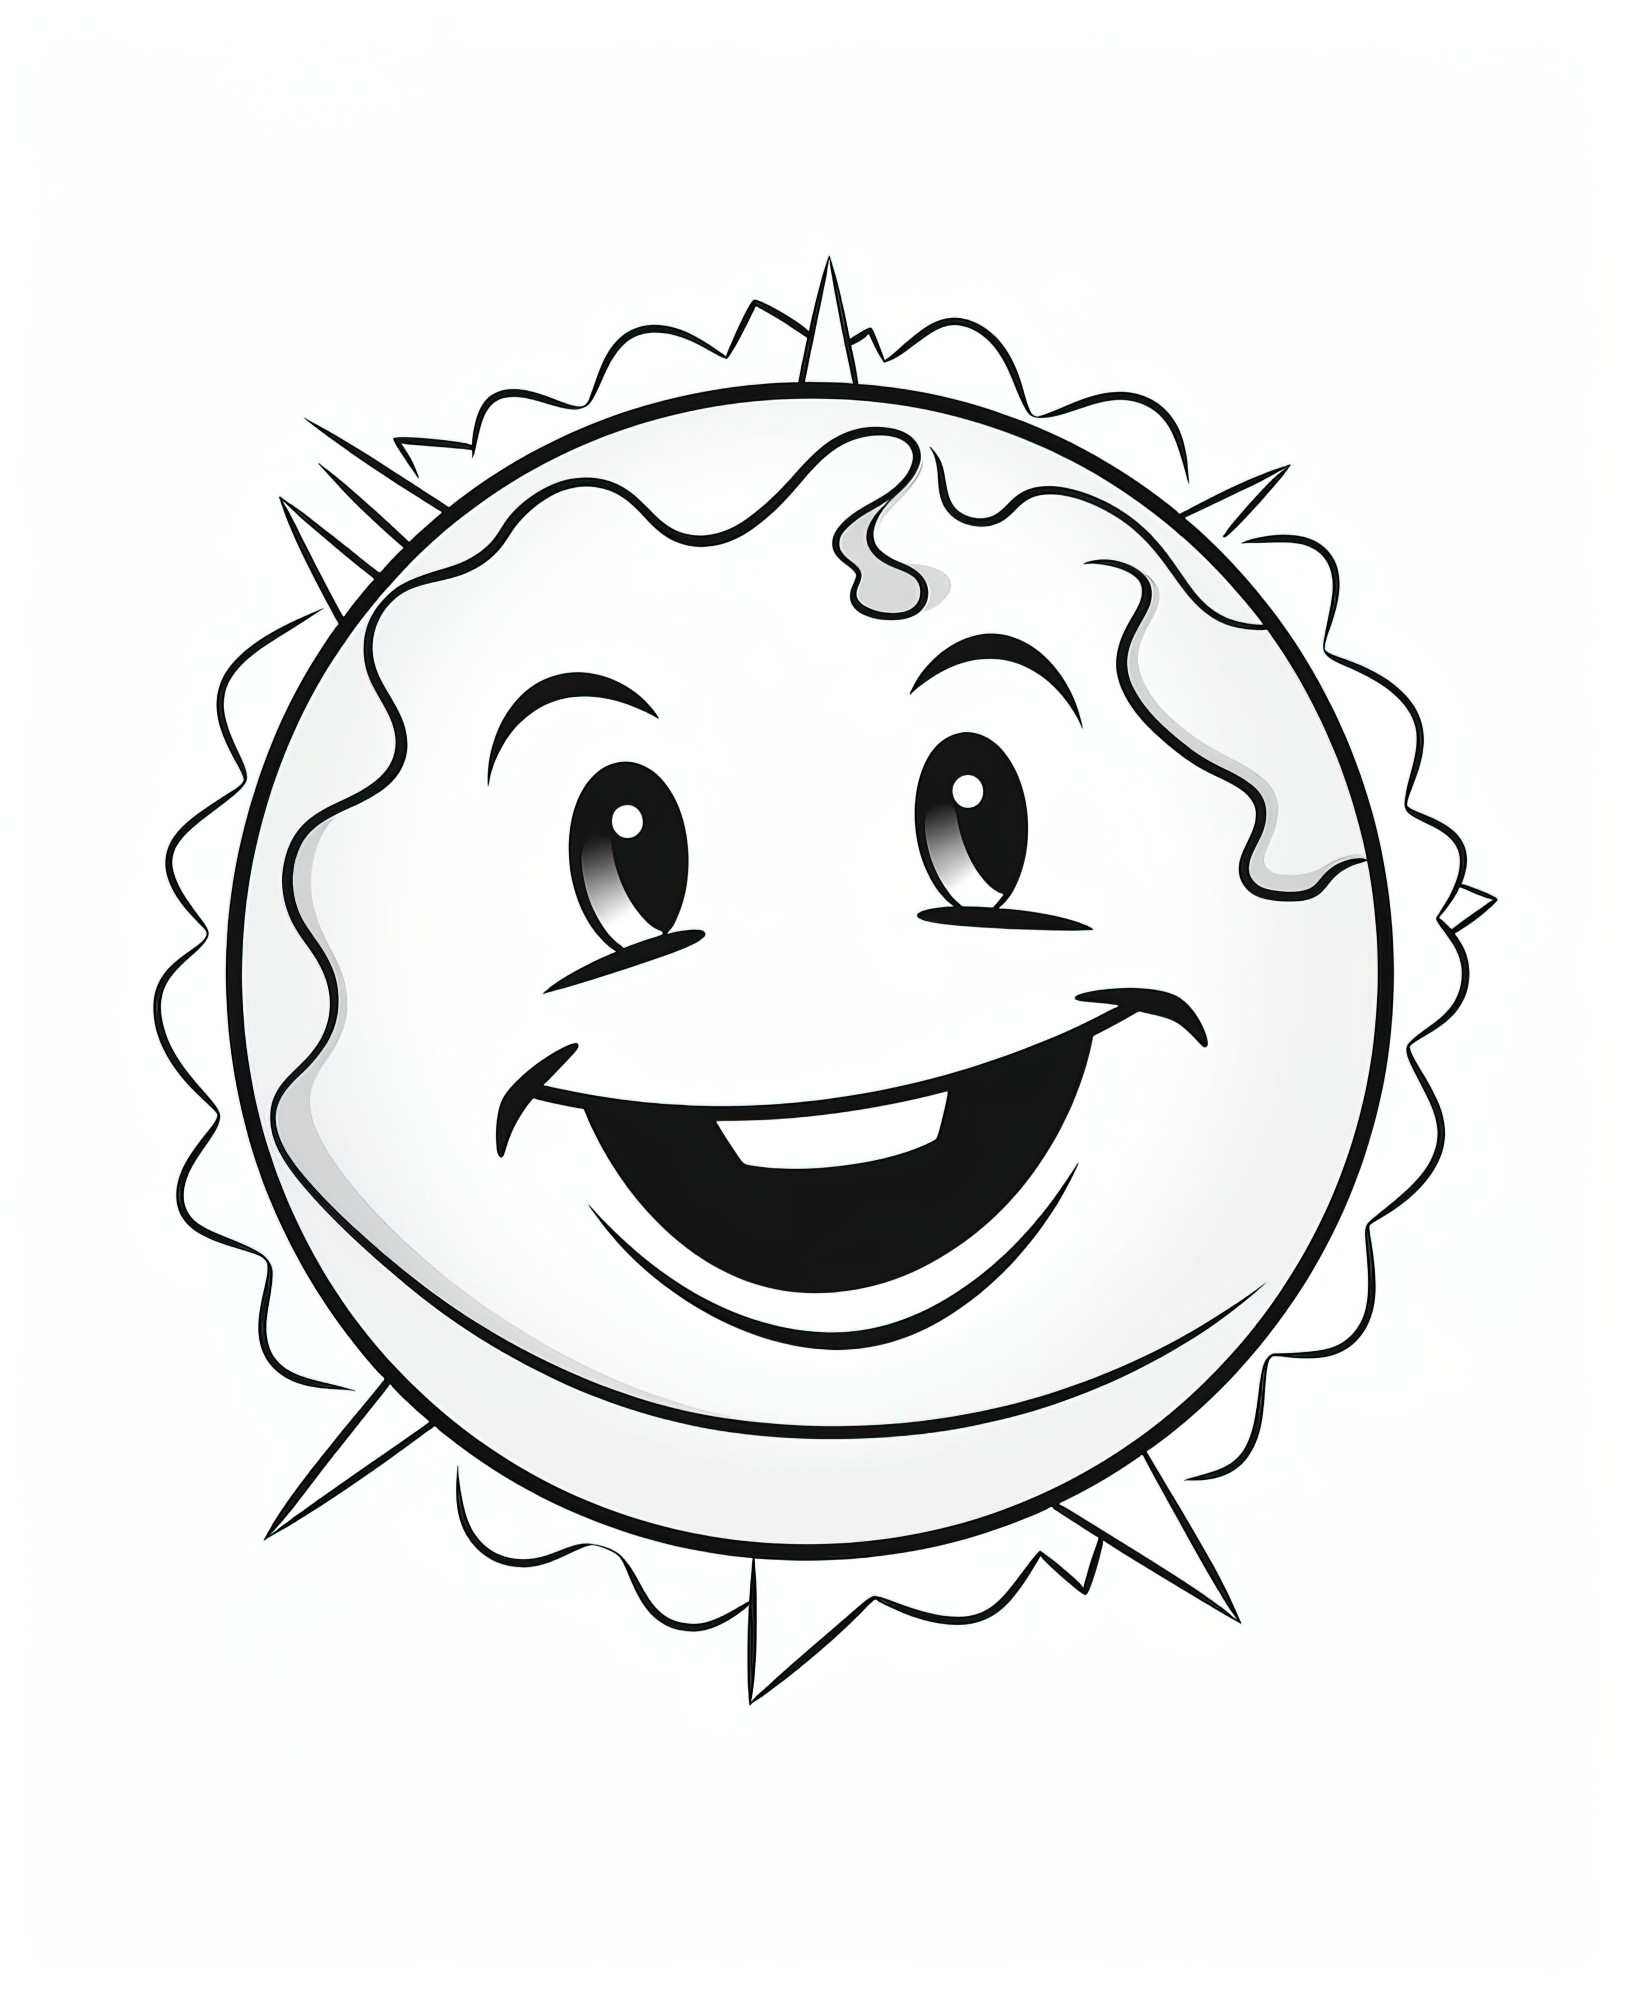 Раскраска для детей: смайлик в виде земли с улыбкой